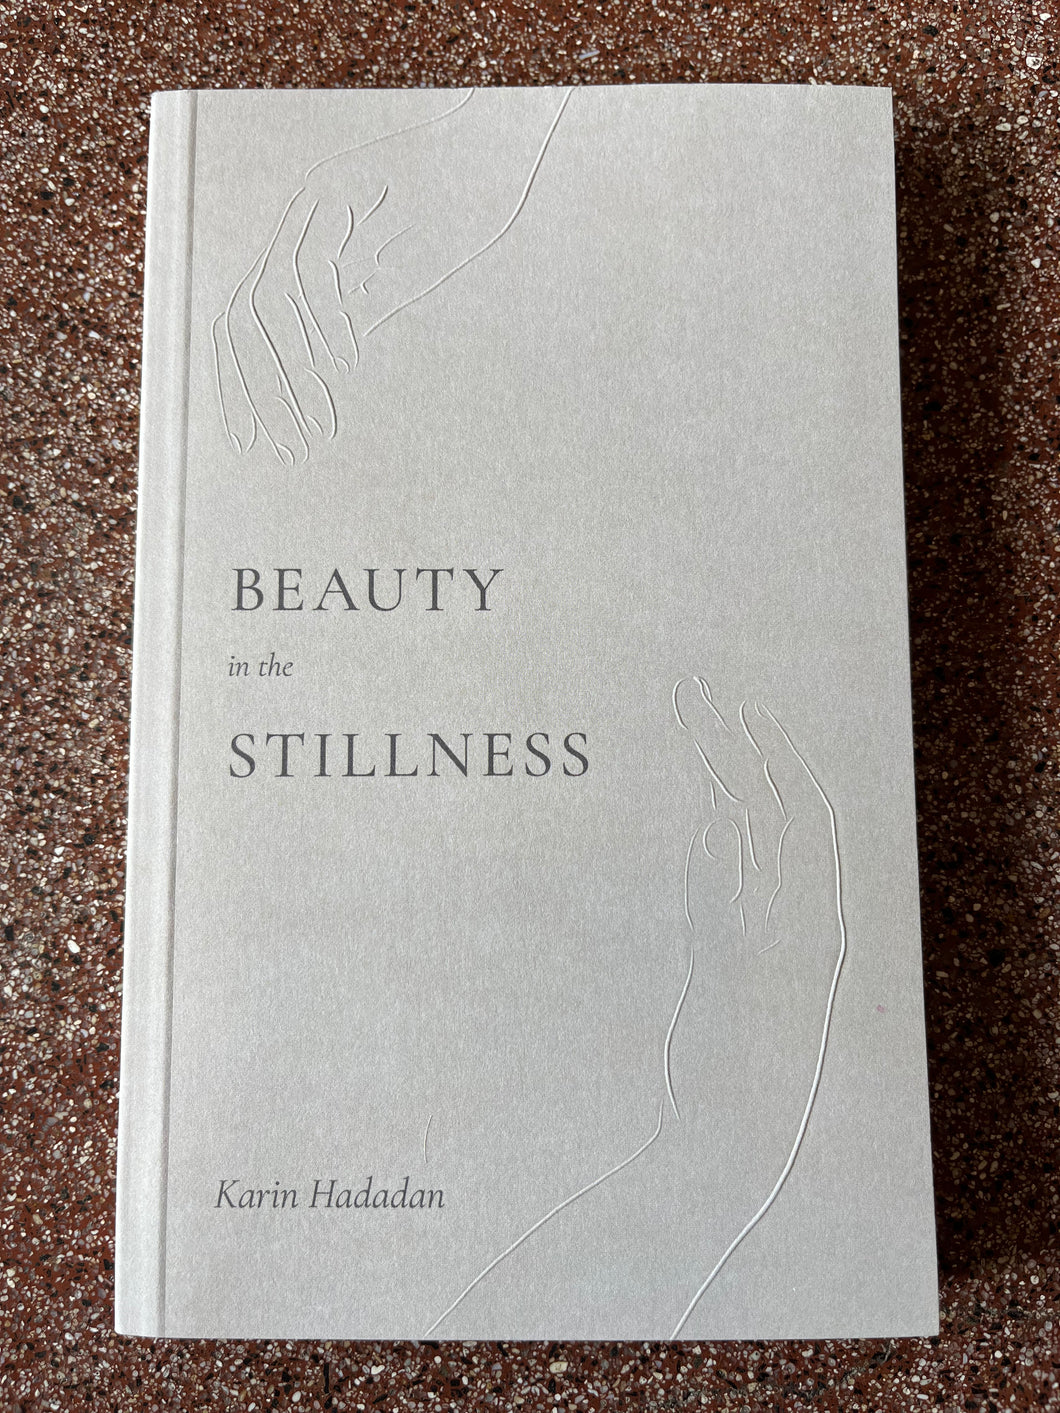 Beauty in the Stillness by Karin Hadadan